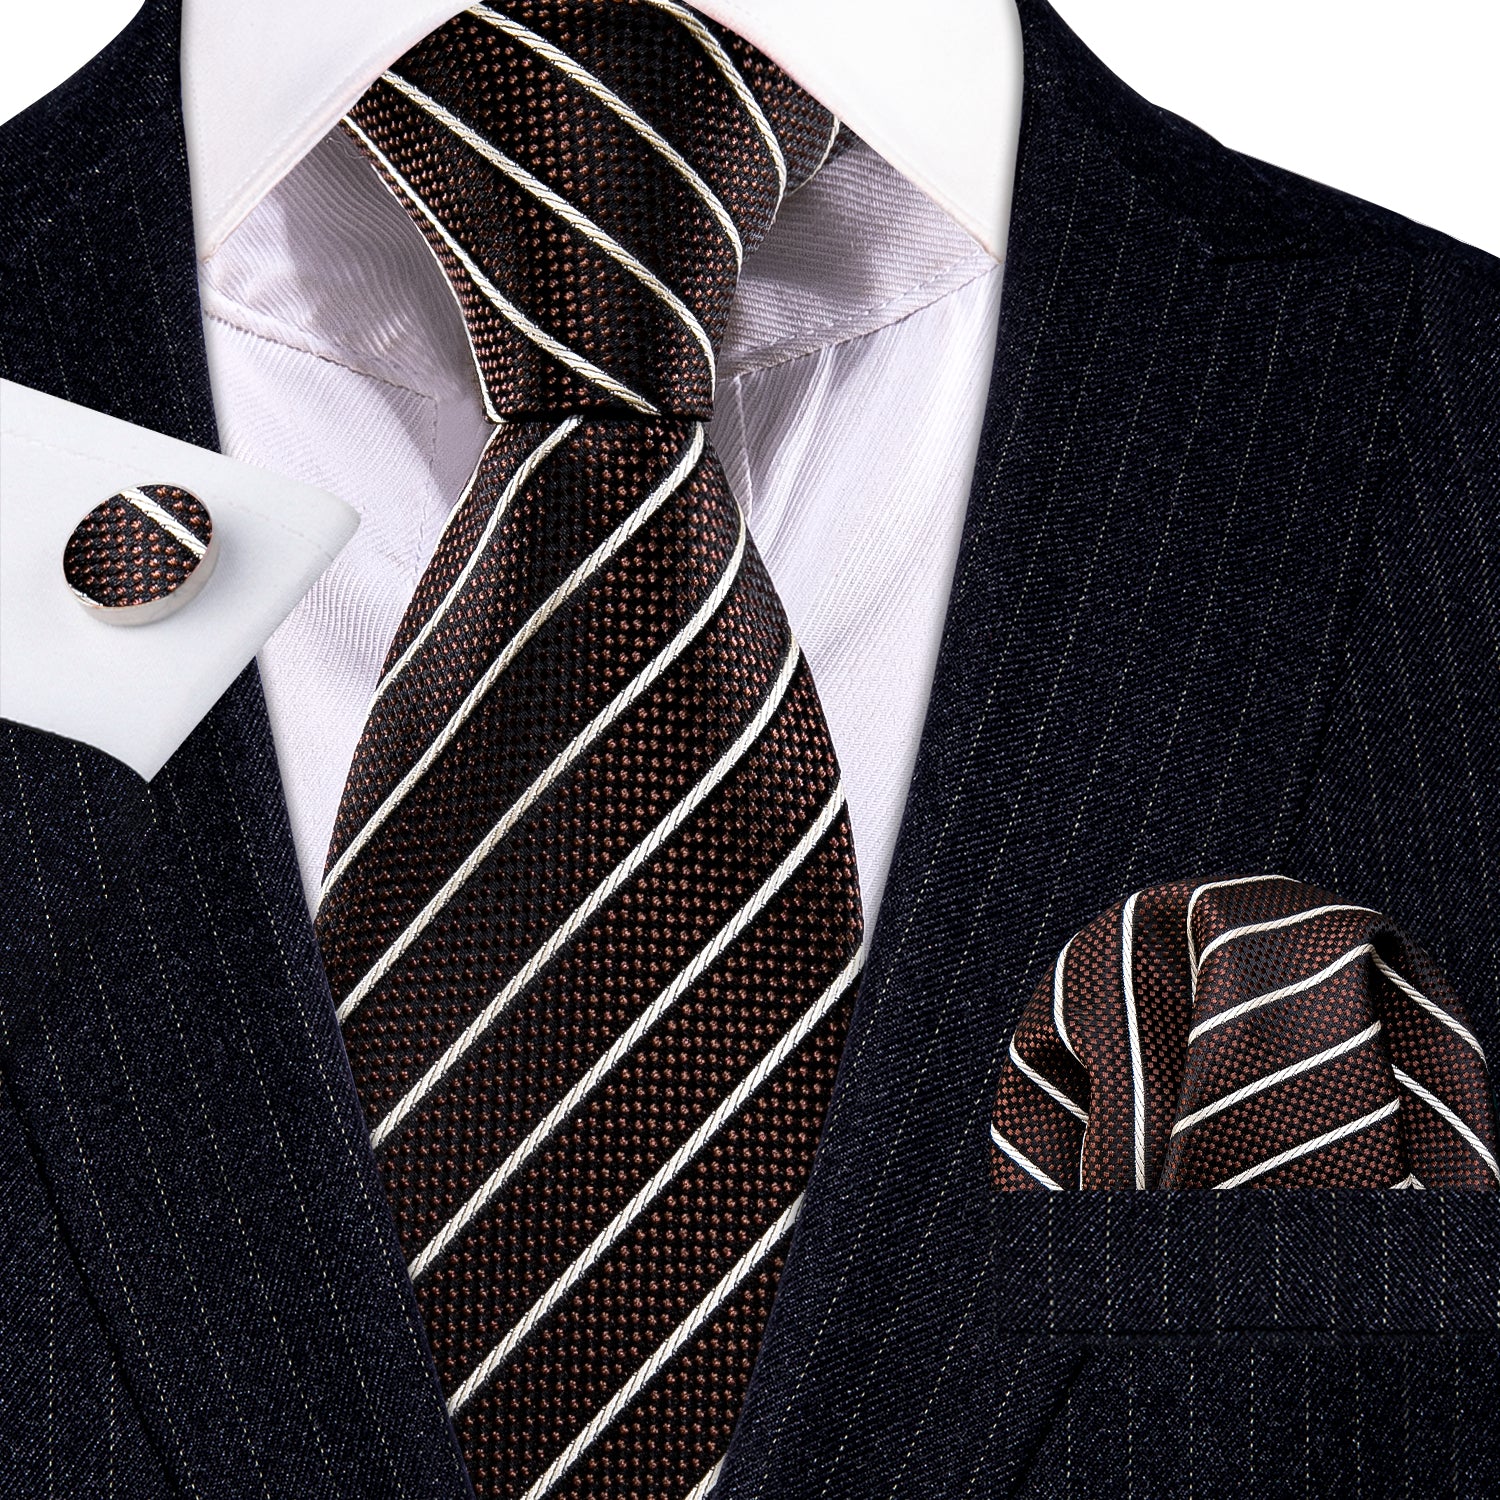 Brown White Striped Silk Tie Handkerchief Cufflinks Set